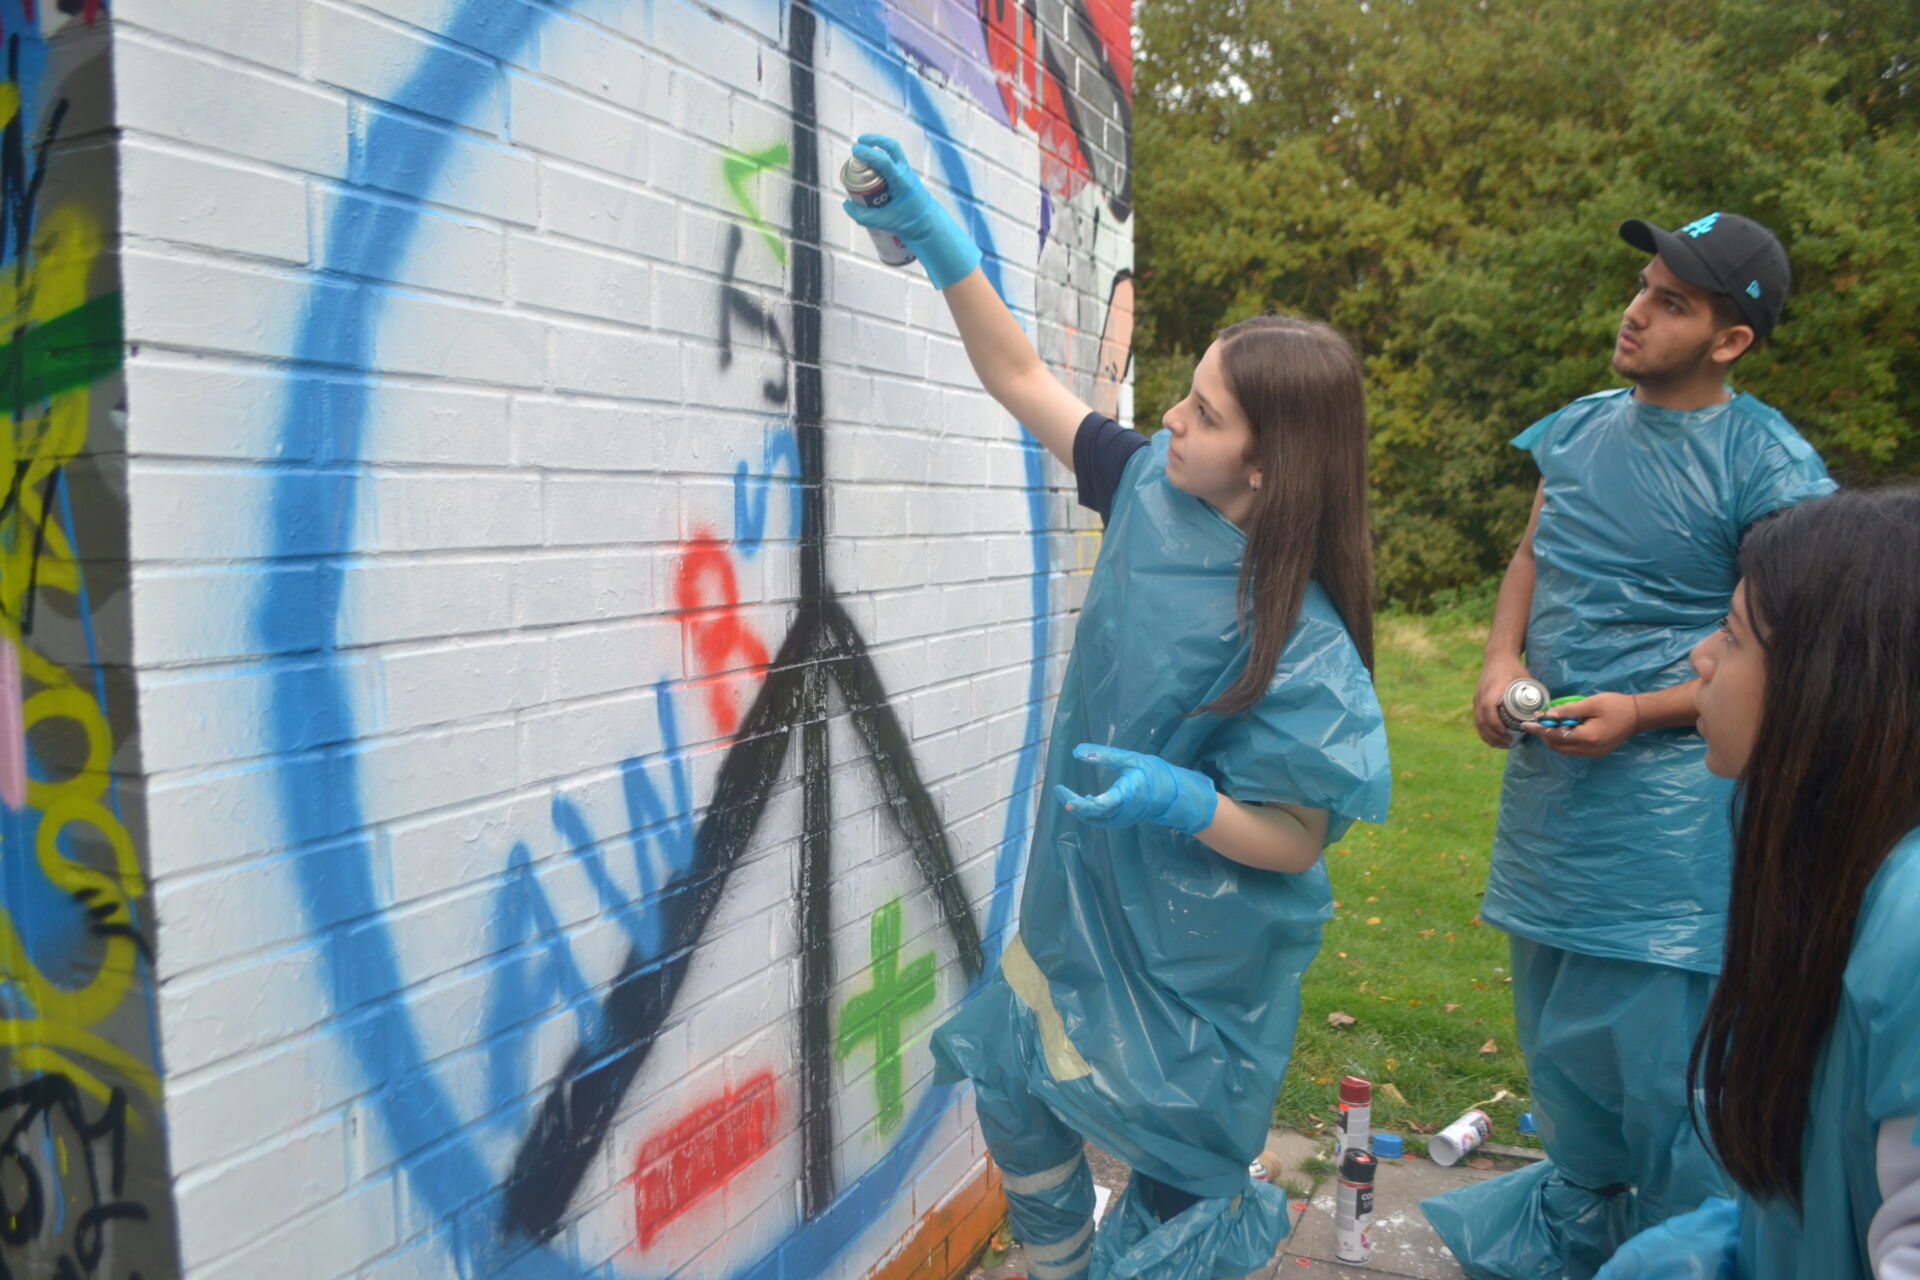 Der Graffiti-Workshop als Methode, um Erfahrungen und politische Messages nach außen zu tragen.